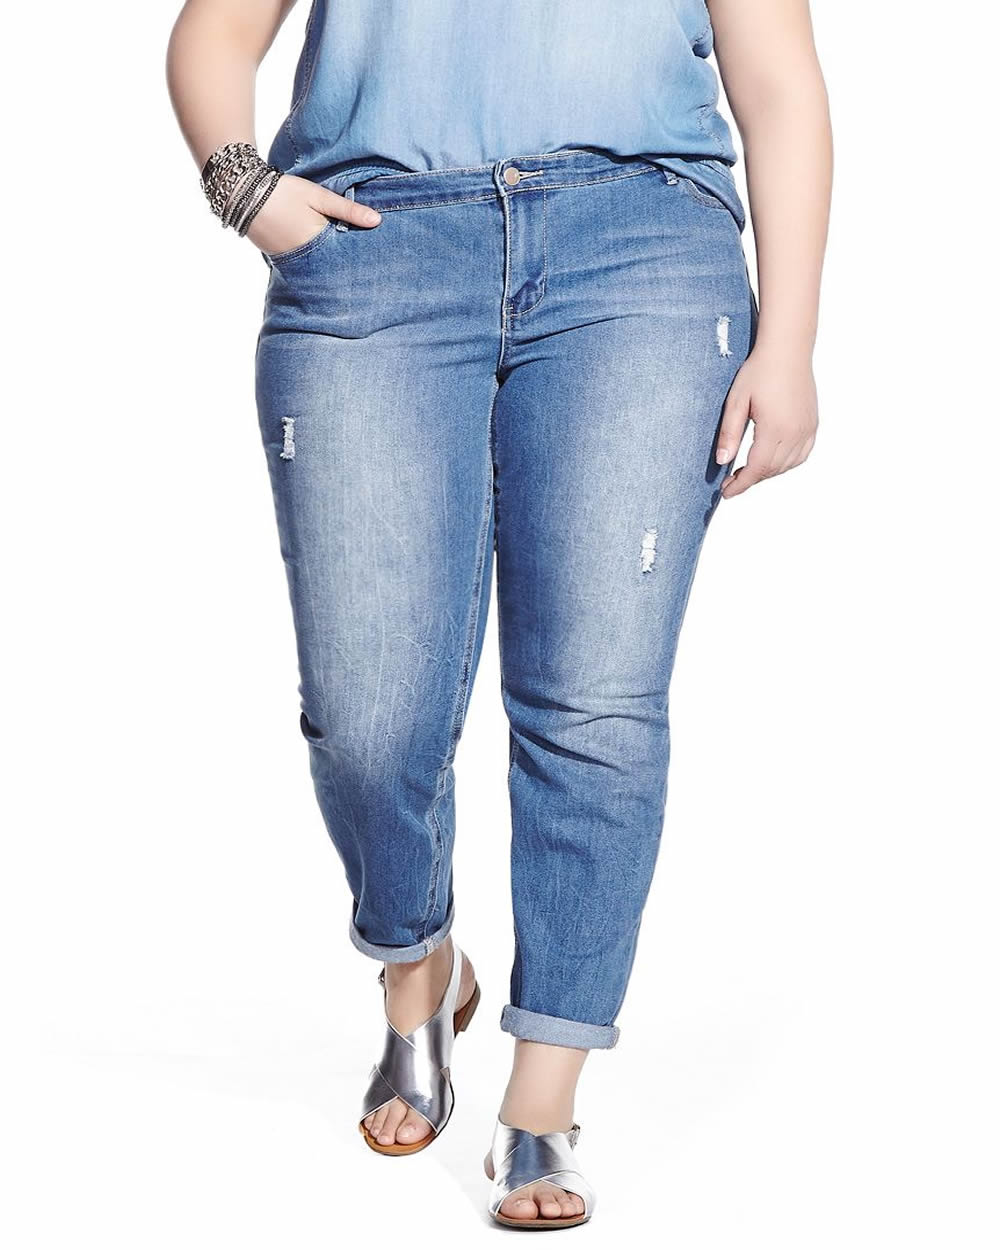 Валберис купить джинсы большого размера. Джинсы для полных. Джинсы для полных девушек. Джинсы женские для полных. Ддинсыьна полных женщин.